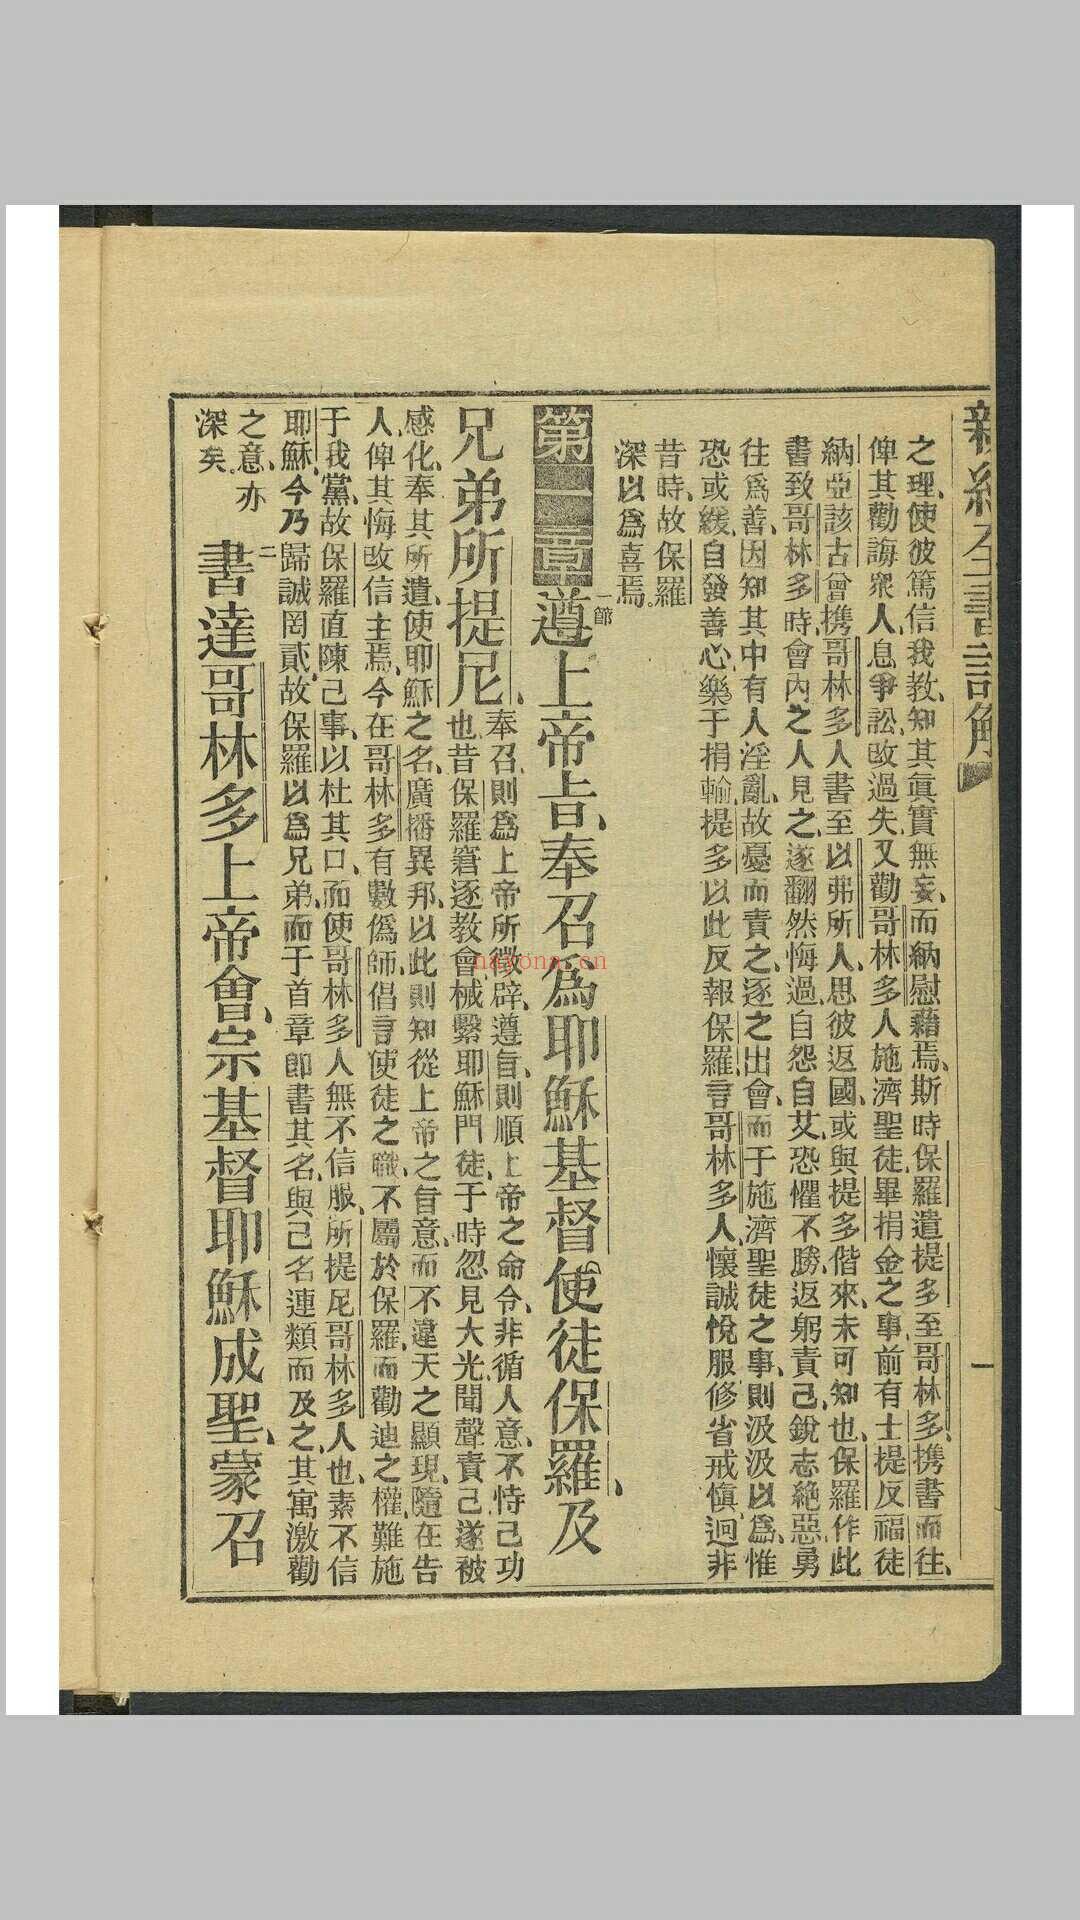 歌林多书注解. 上海  墨海书馆, 清咸丰8年